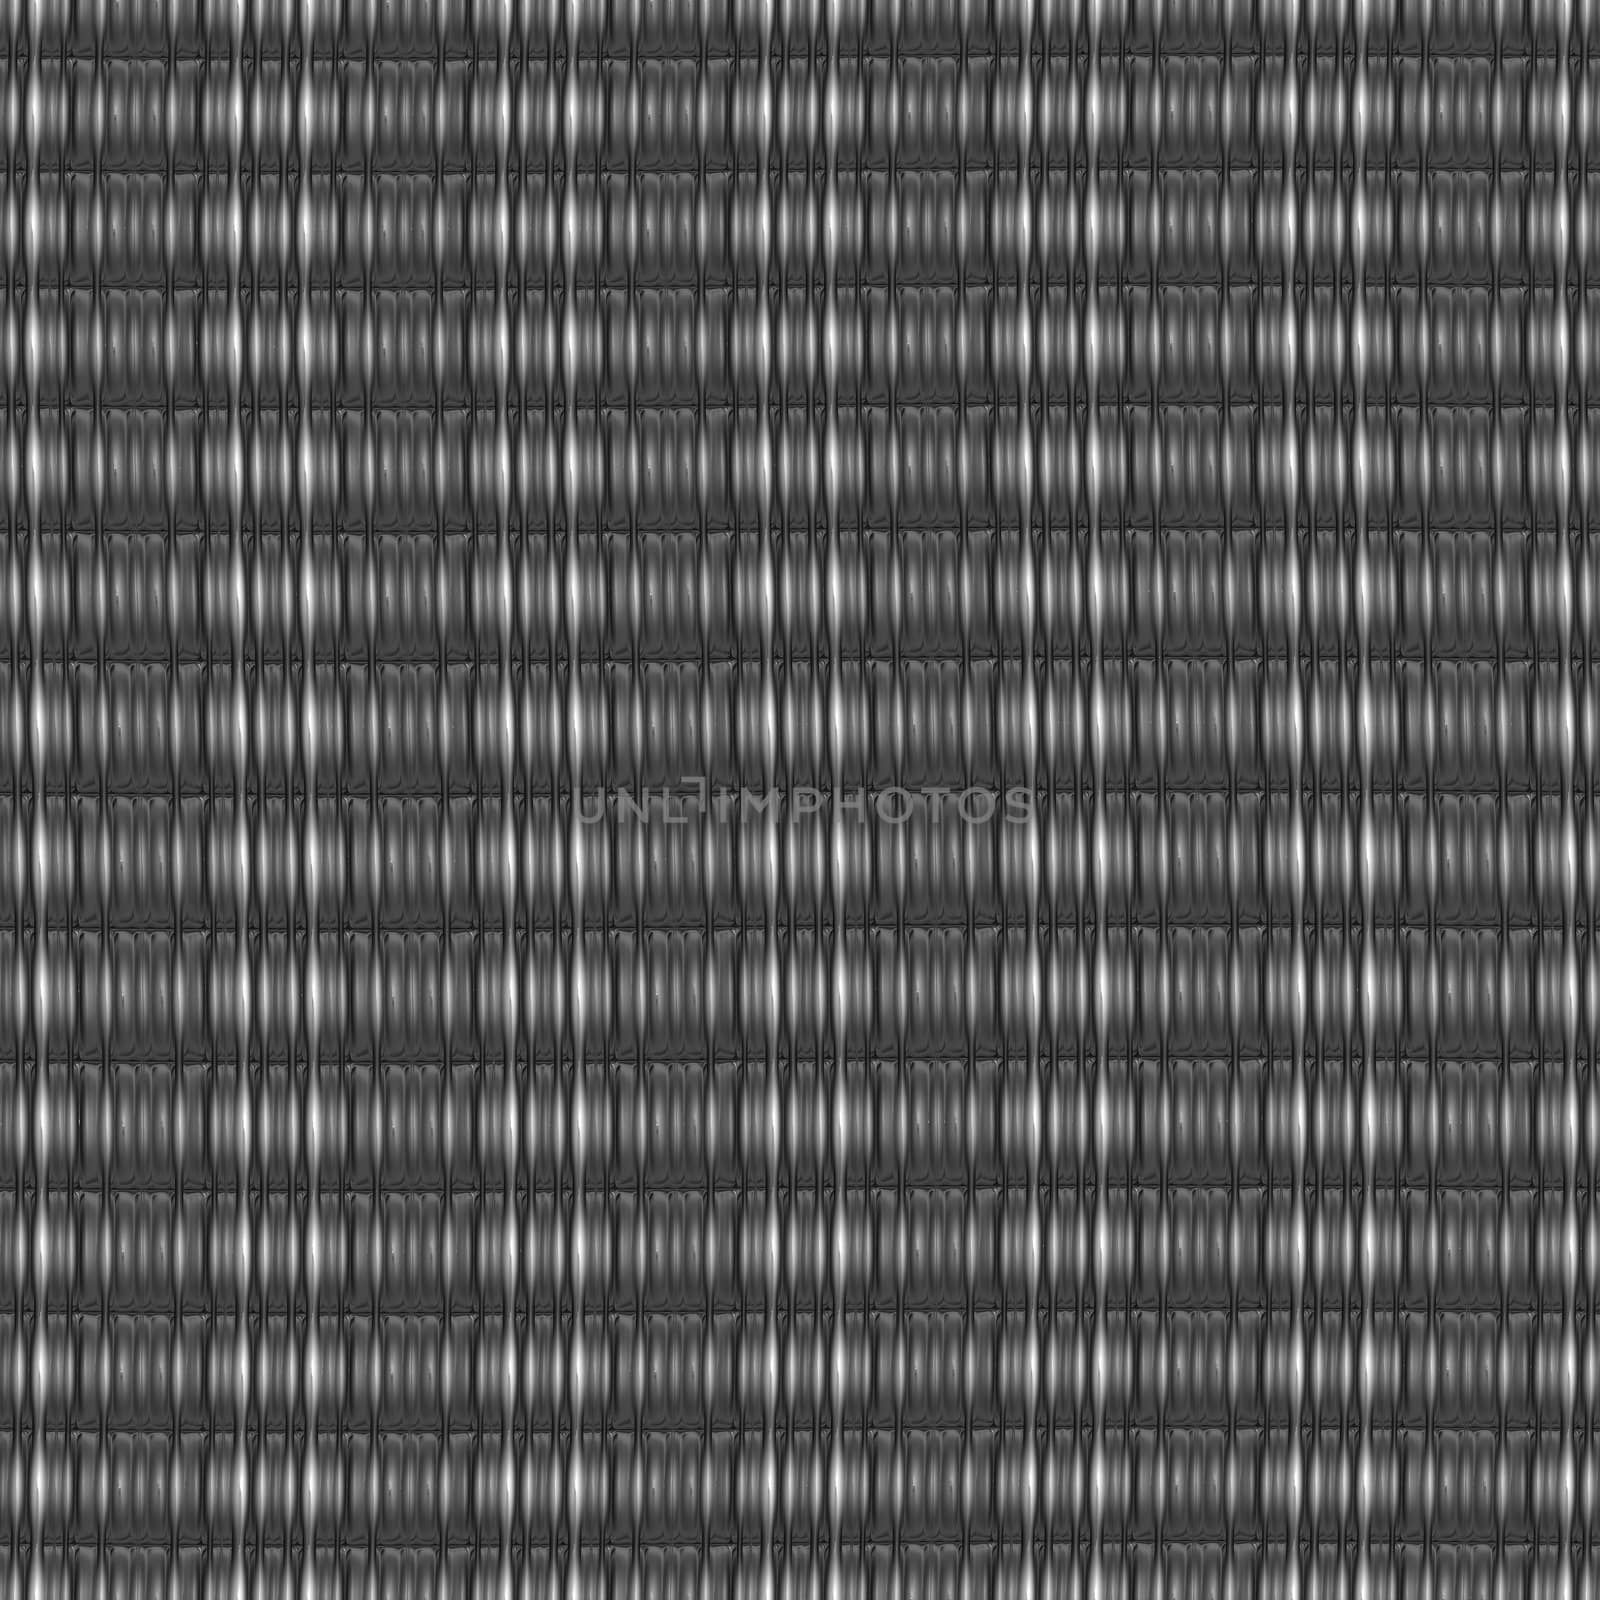 metal grid rows by hospitalera